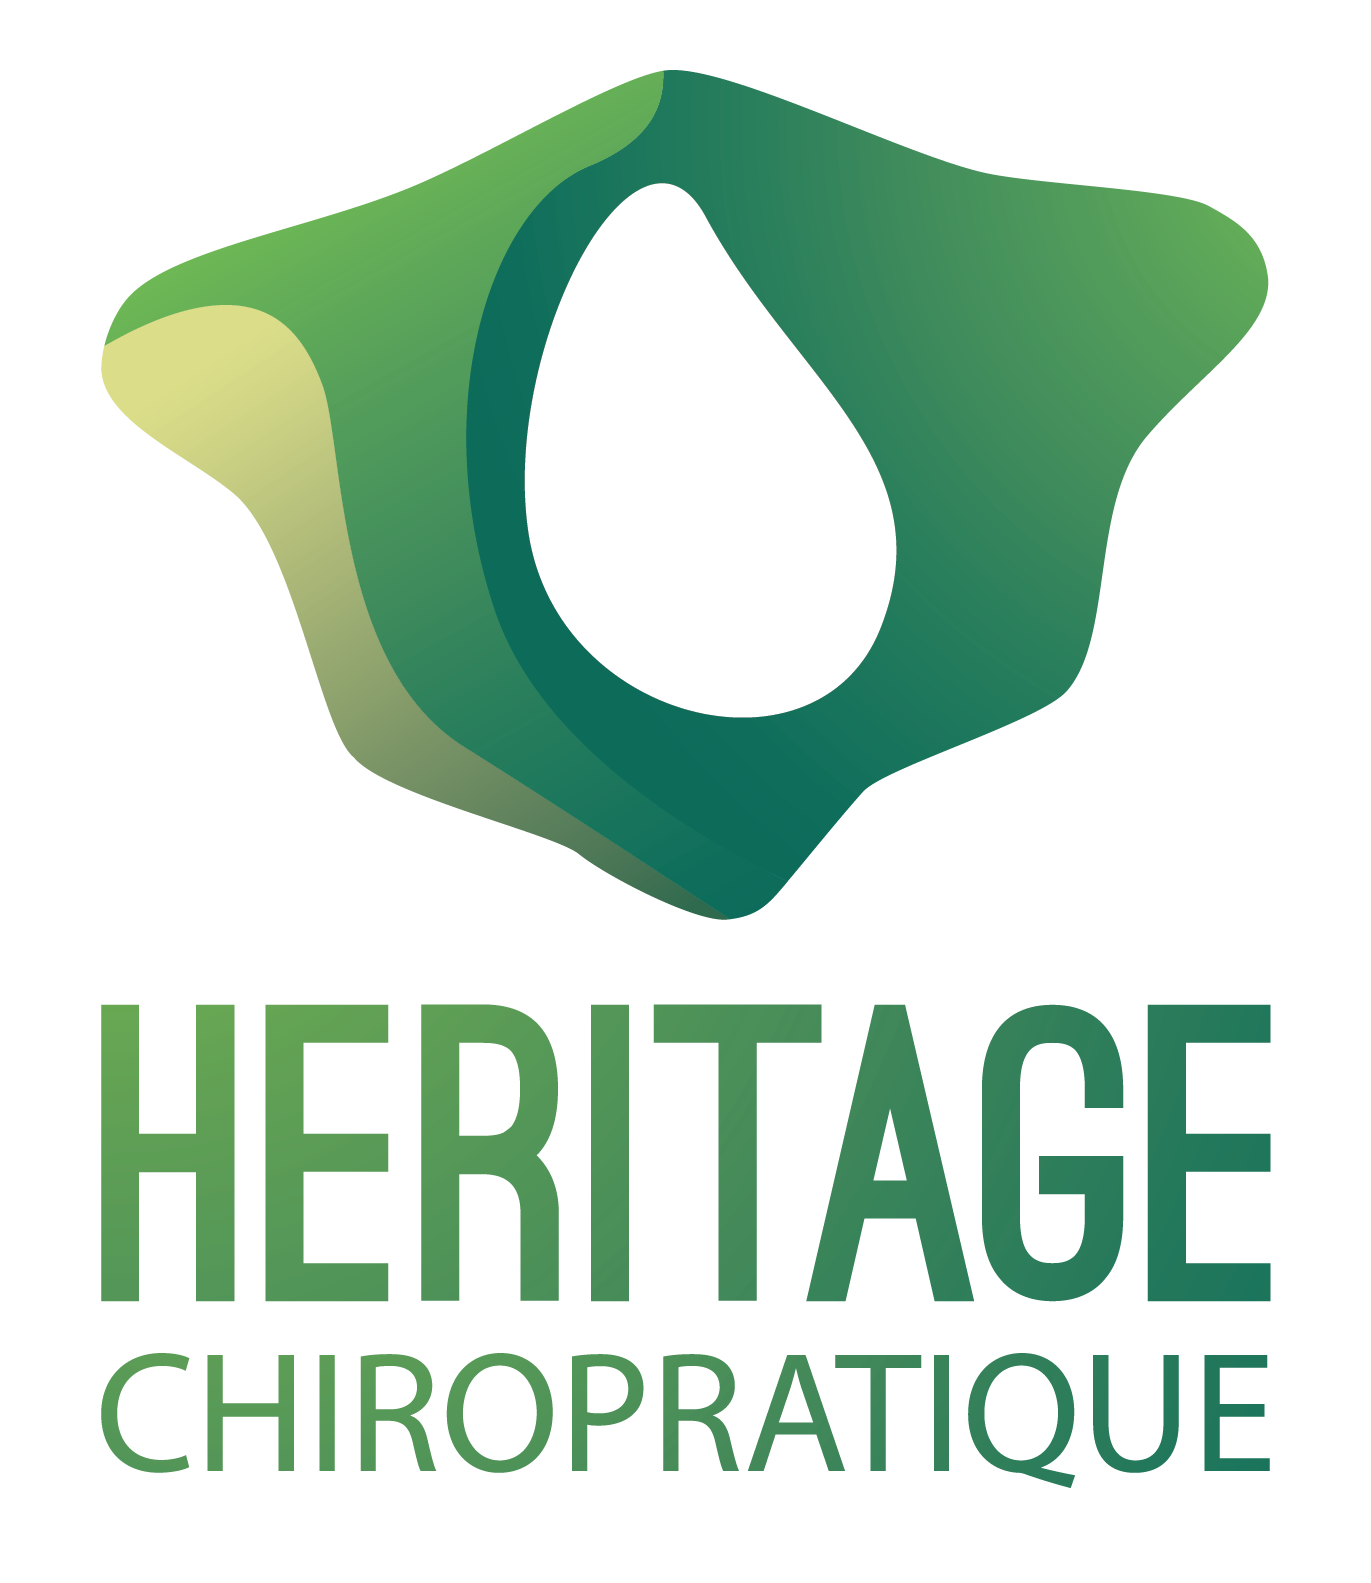 Heritage chiropratique logo